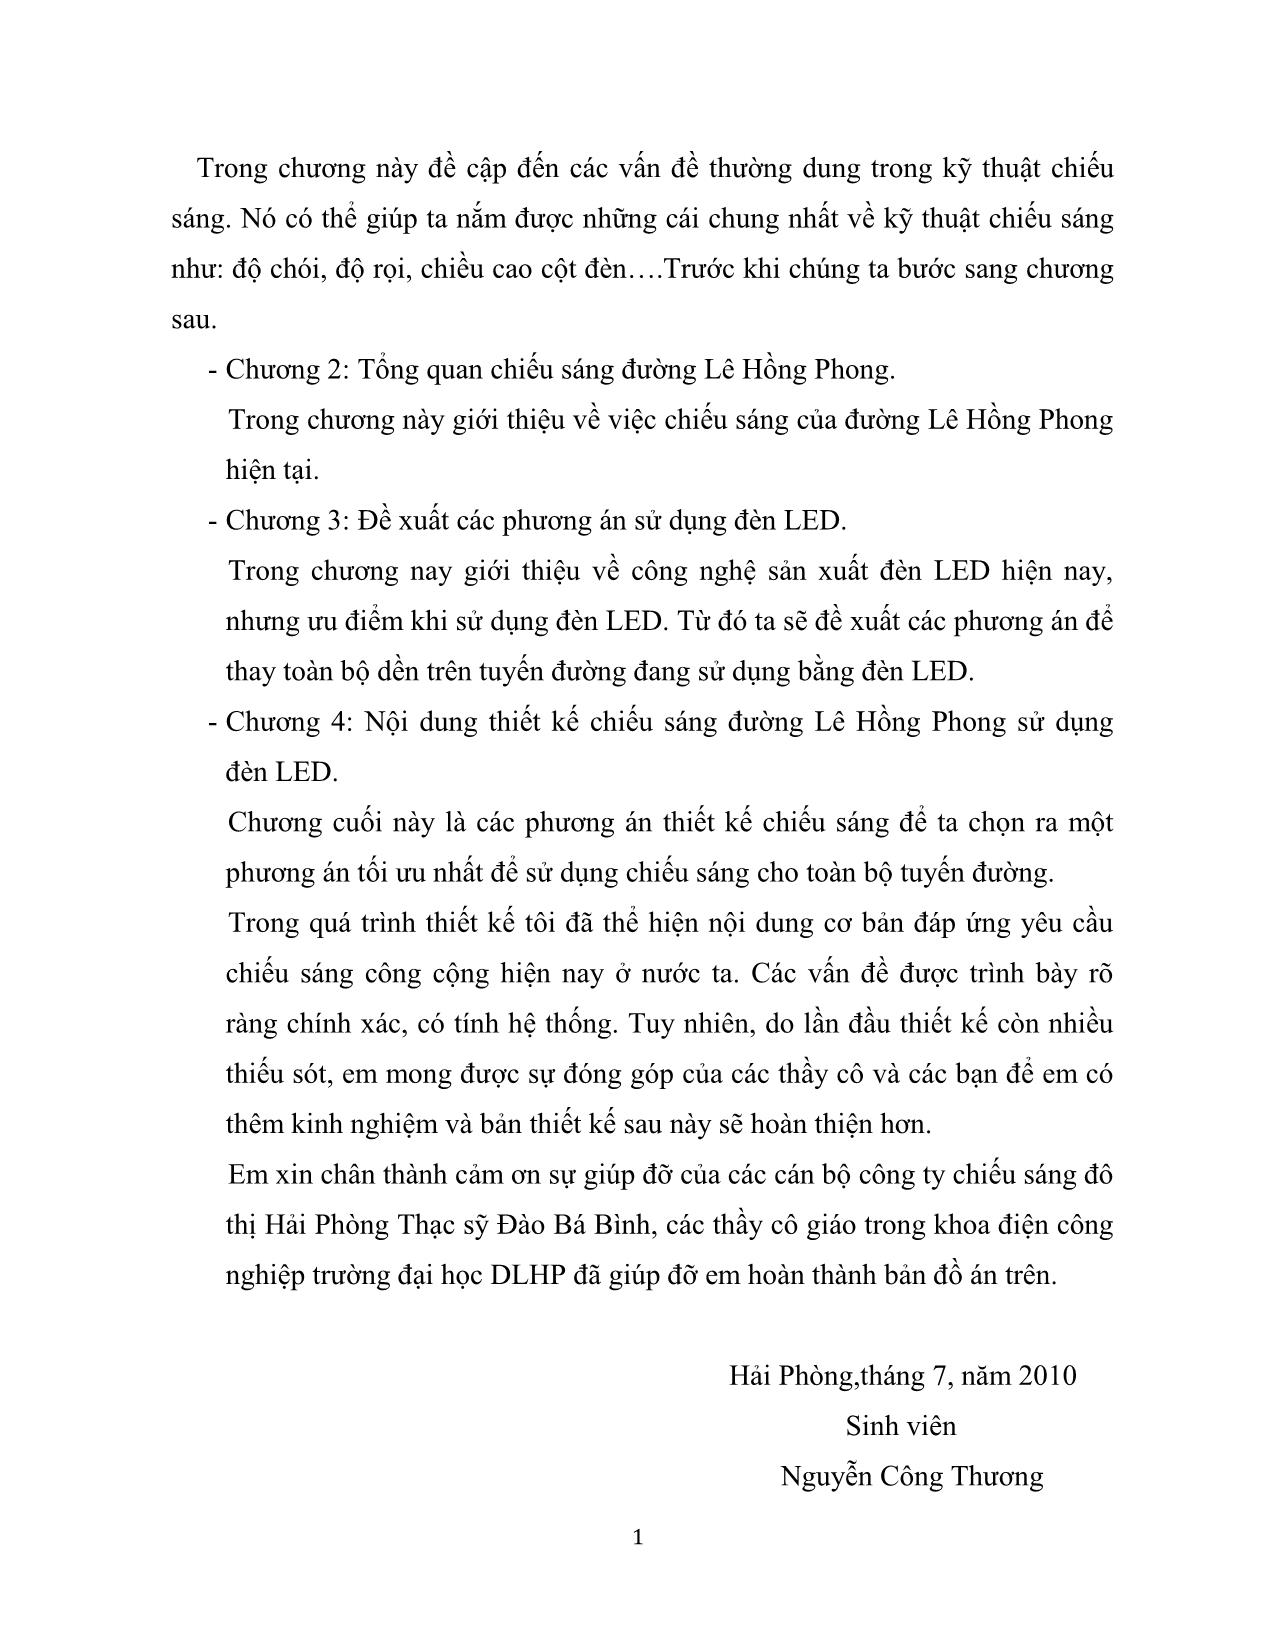 Luận văn Thiết kế chiếu sáng đường Lê Hồng Phong sử dụng đèn LED trang 3